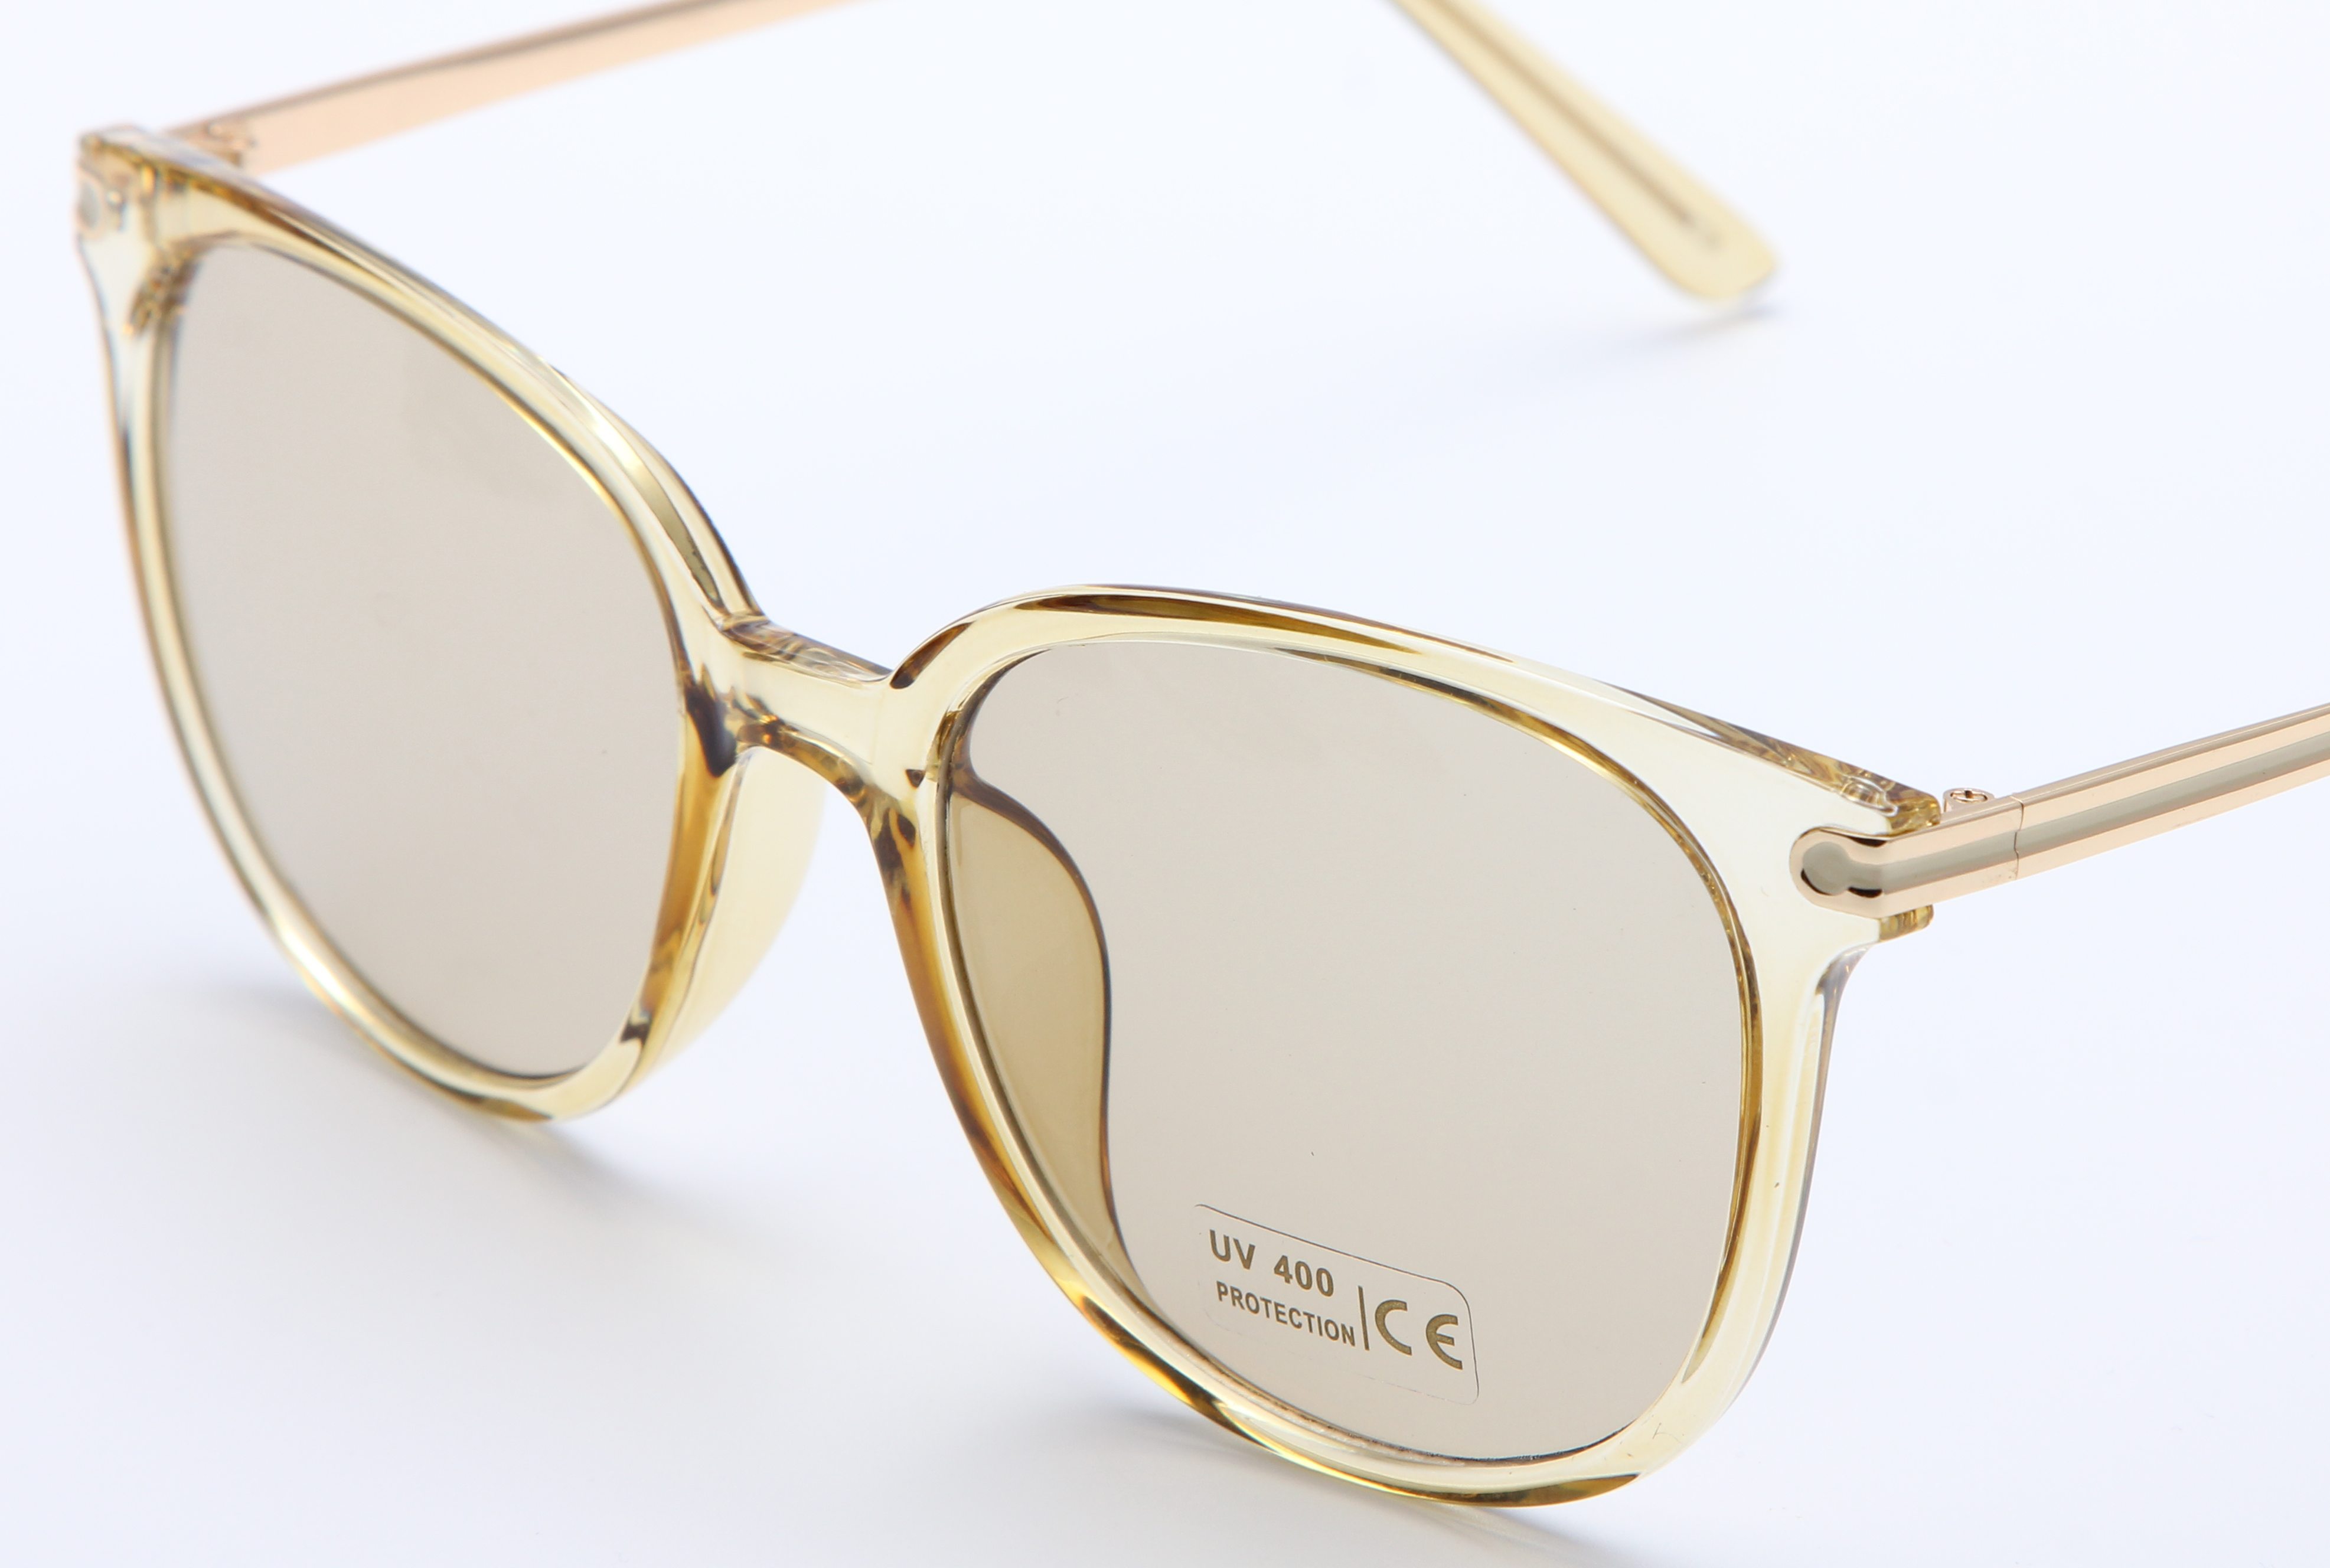 新款高档时尚太阳镜UV400镜片防紫外线眼镜防晒镜3产品图